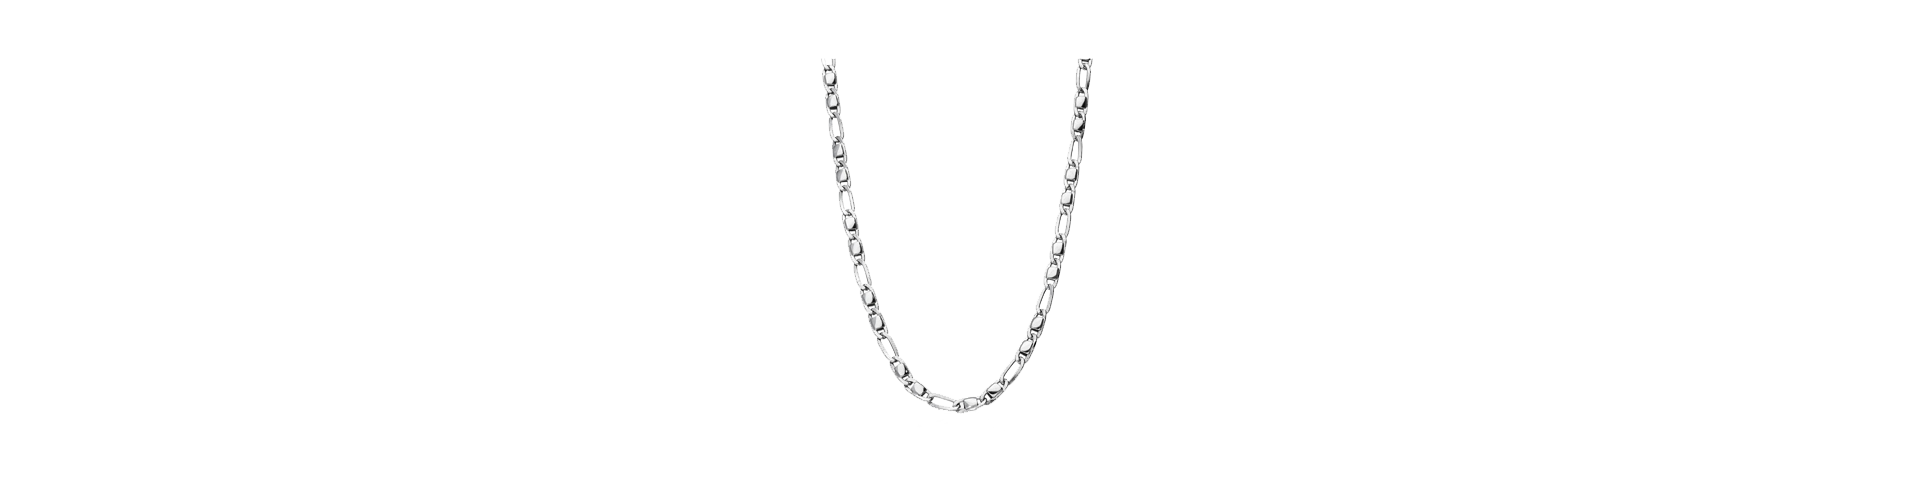 Child pendant necklace | Gioielli di Valenza